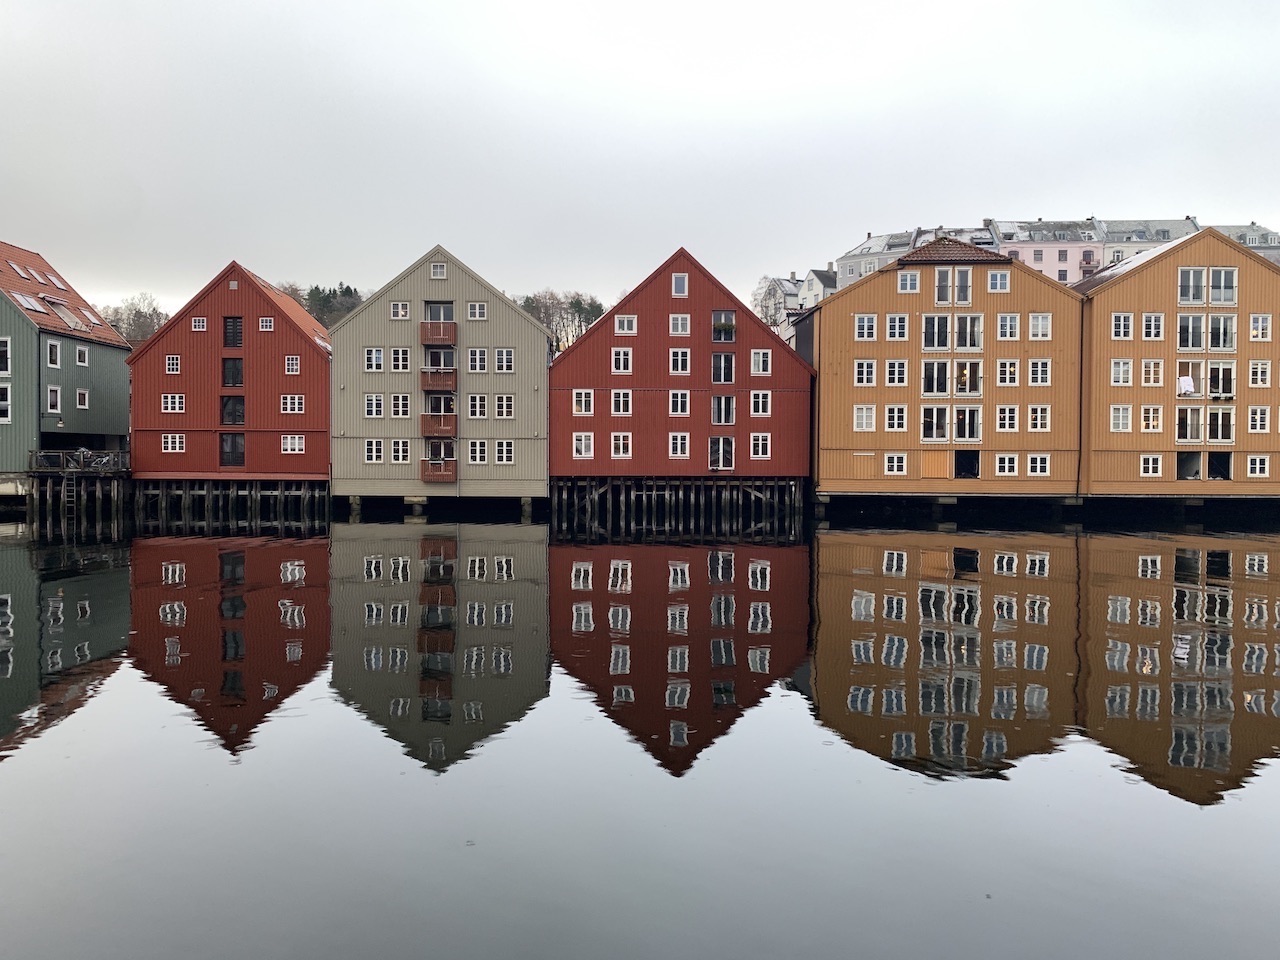 Bakklandet and Those Wonderful Wooden Dock Houses